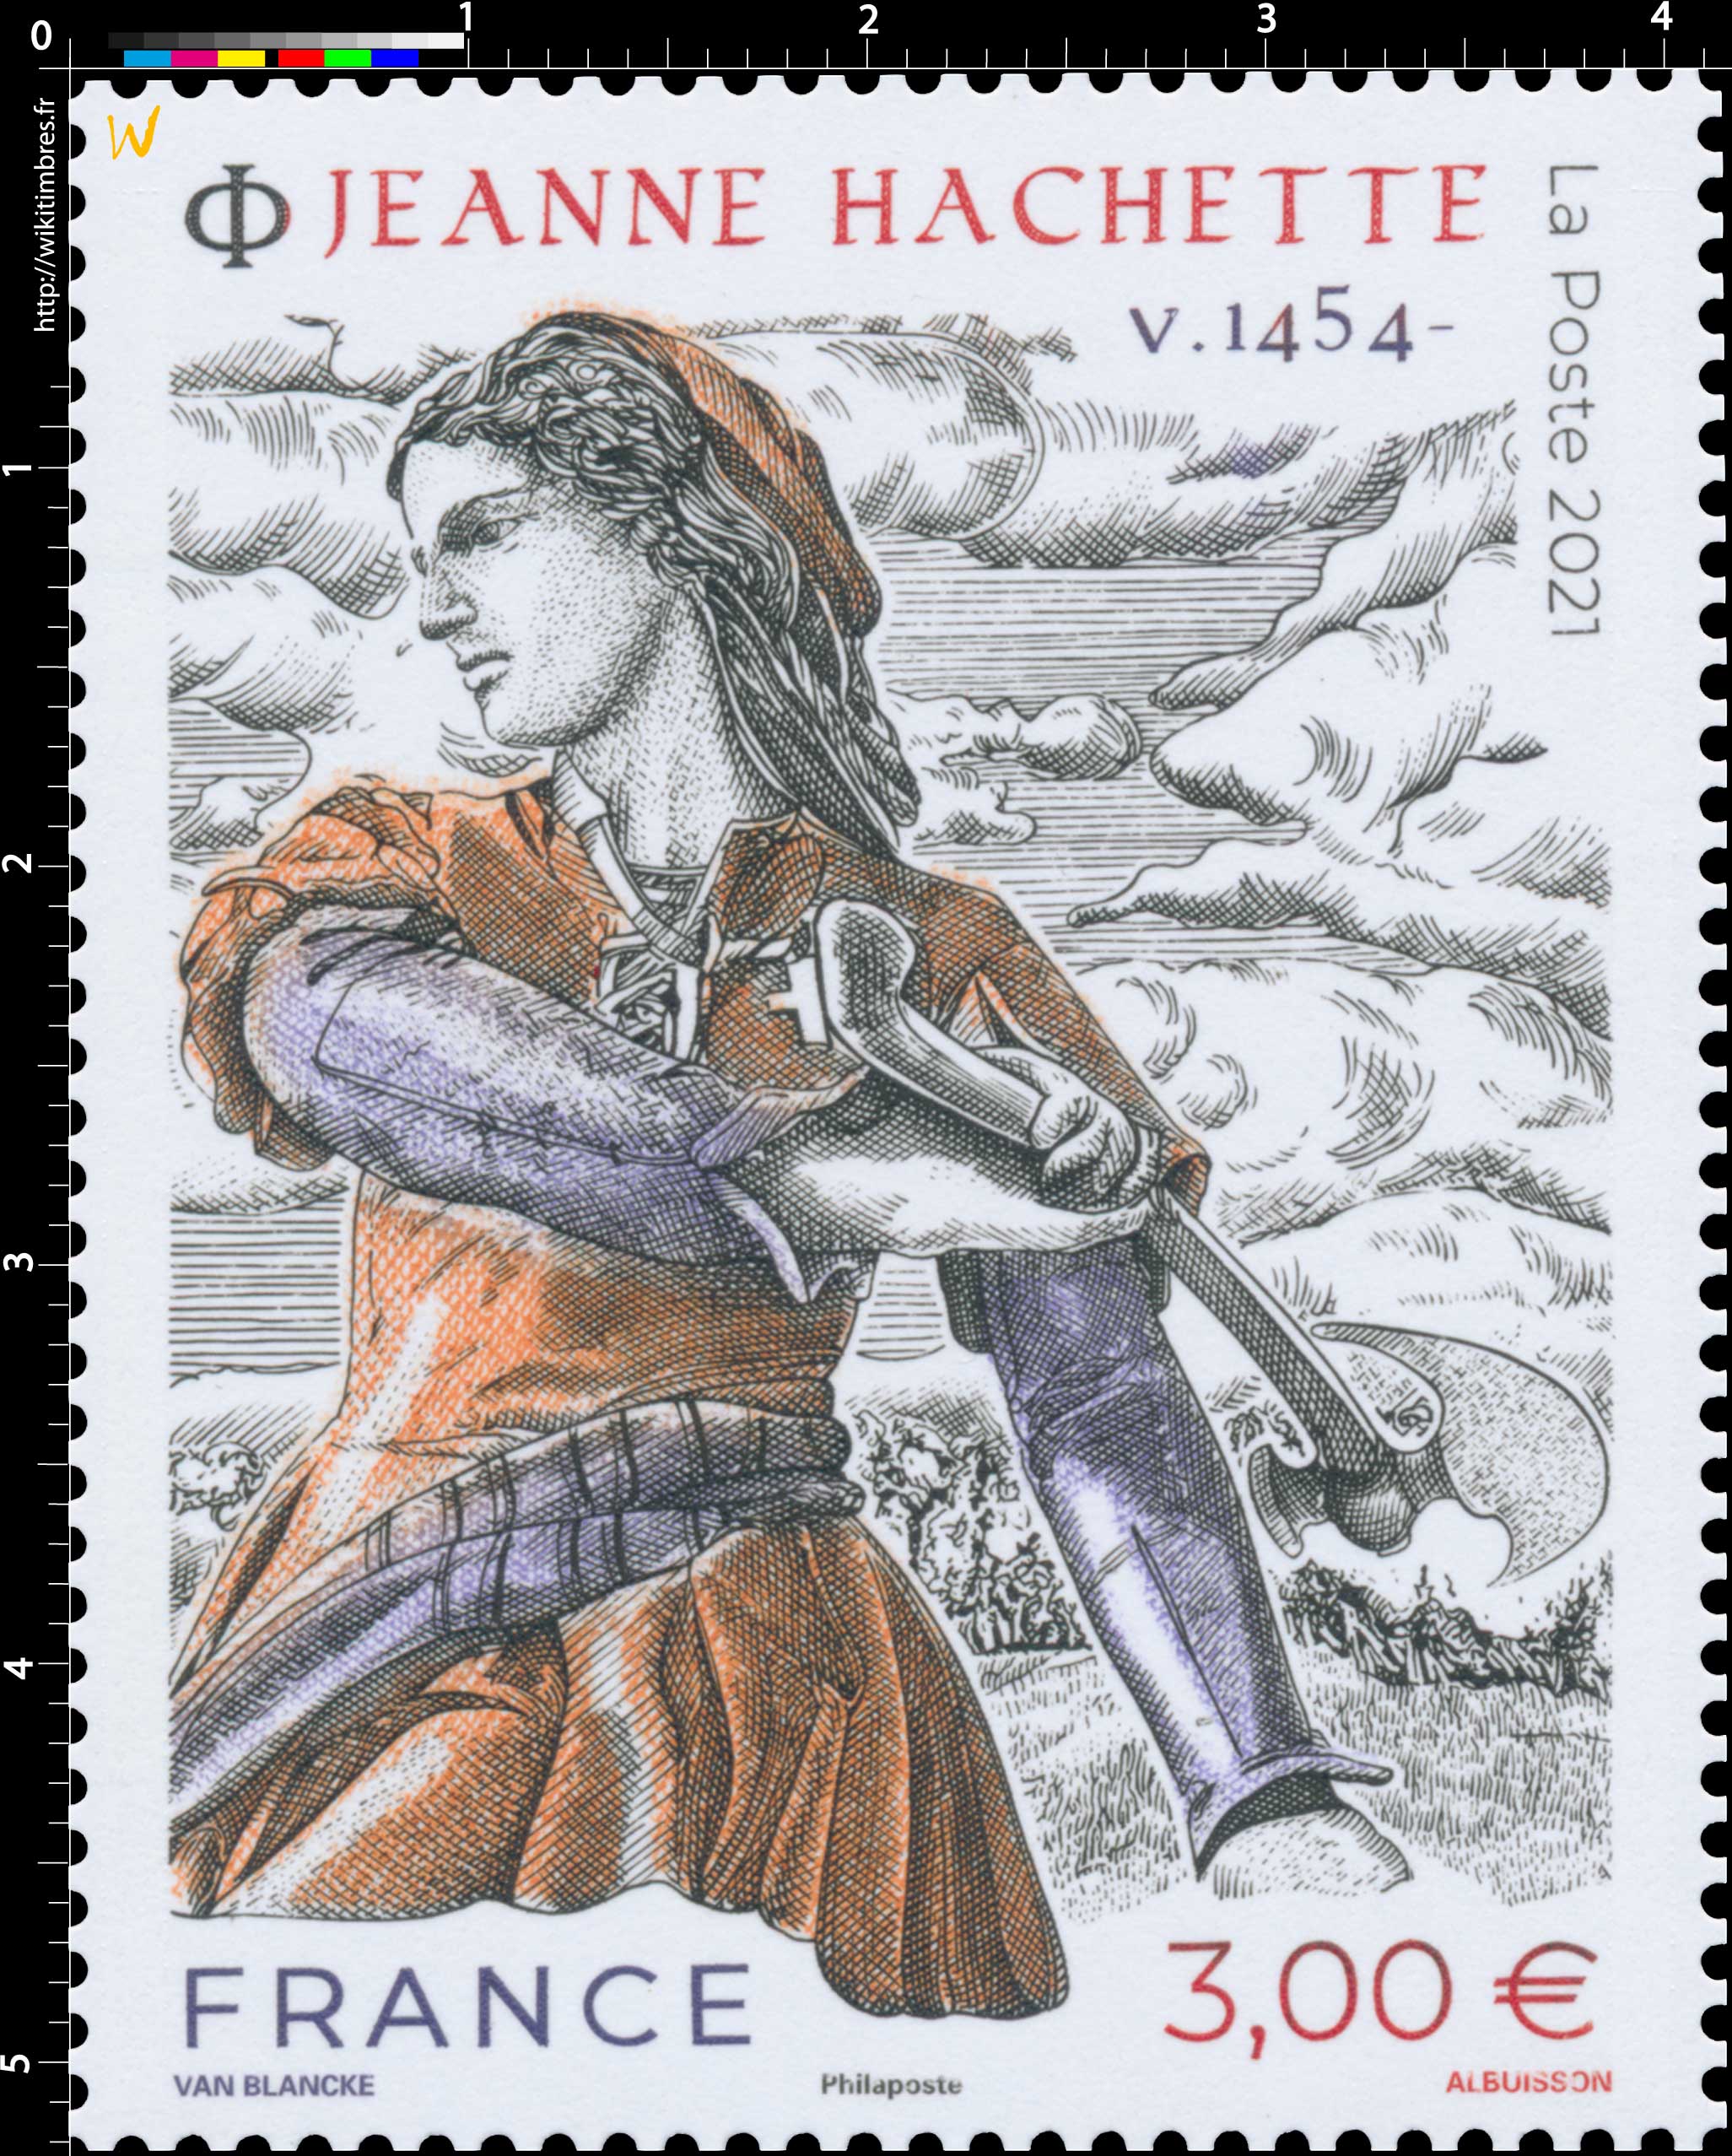 2021 Jeanne Hachette v. 1454 